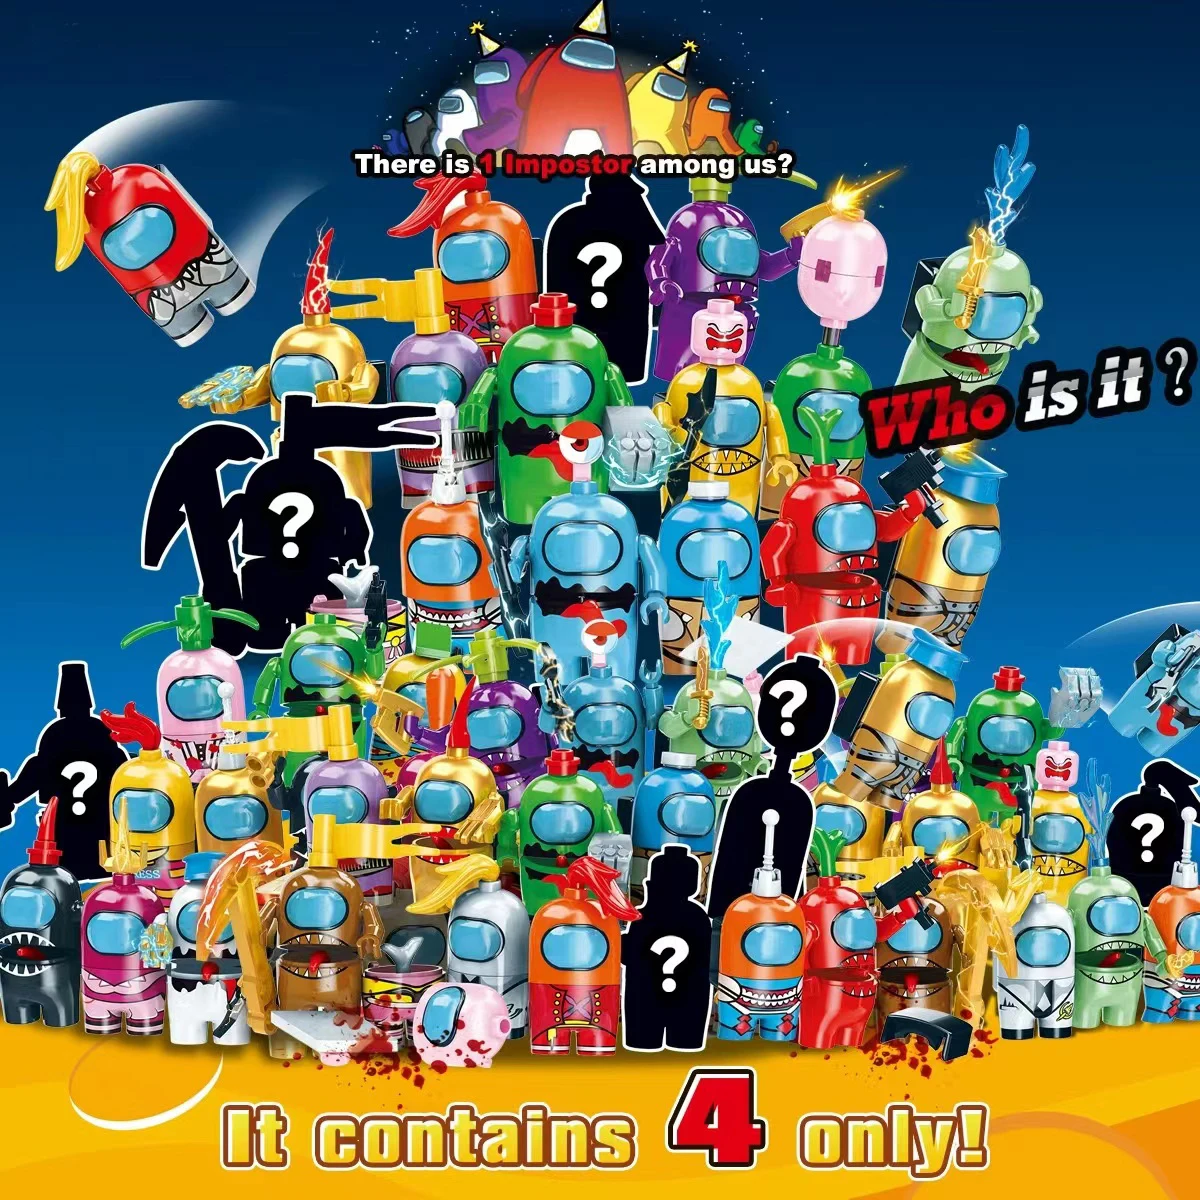 

Кукла 32 шт., в том числе оружие, базовая игра, звезда, космос, инопланетянин, плюш, строительные блоки, Классическая модель Наборы кубиков Kids